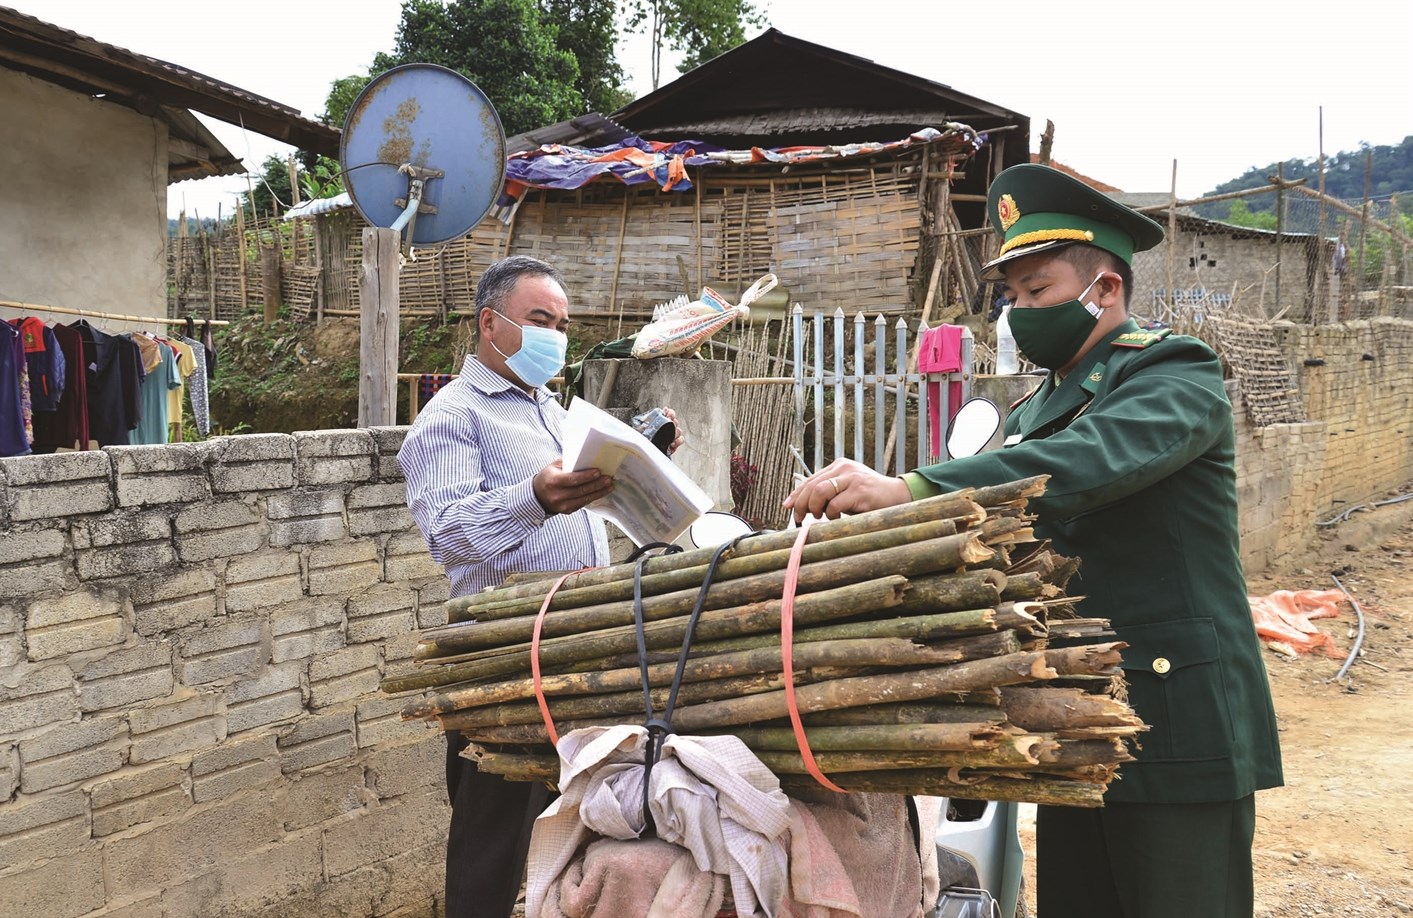 Cán bộ Trạm Kiểm soát Biên phòng Pa Thơm kiêm cầu nối đưa thư giúp người dân 2 nước trao đổi thông tin trong tình hình bị hạn chế xuất, nhập cảnh